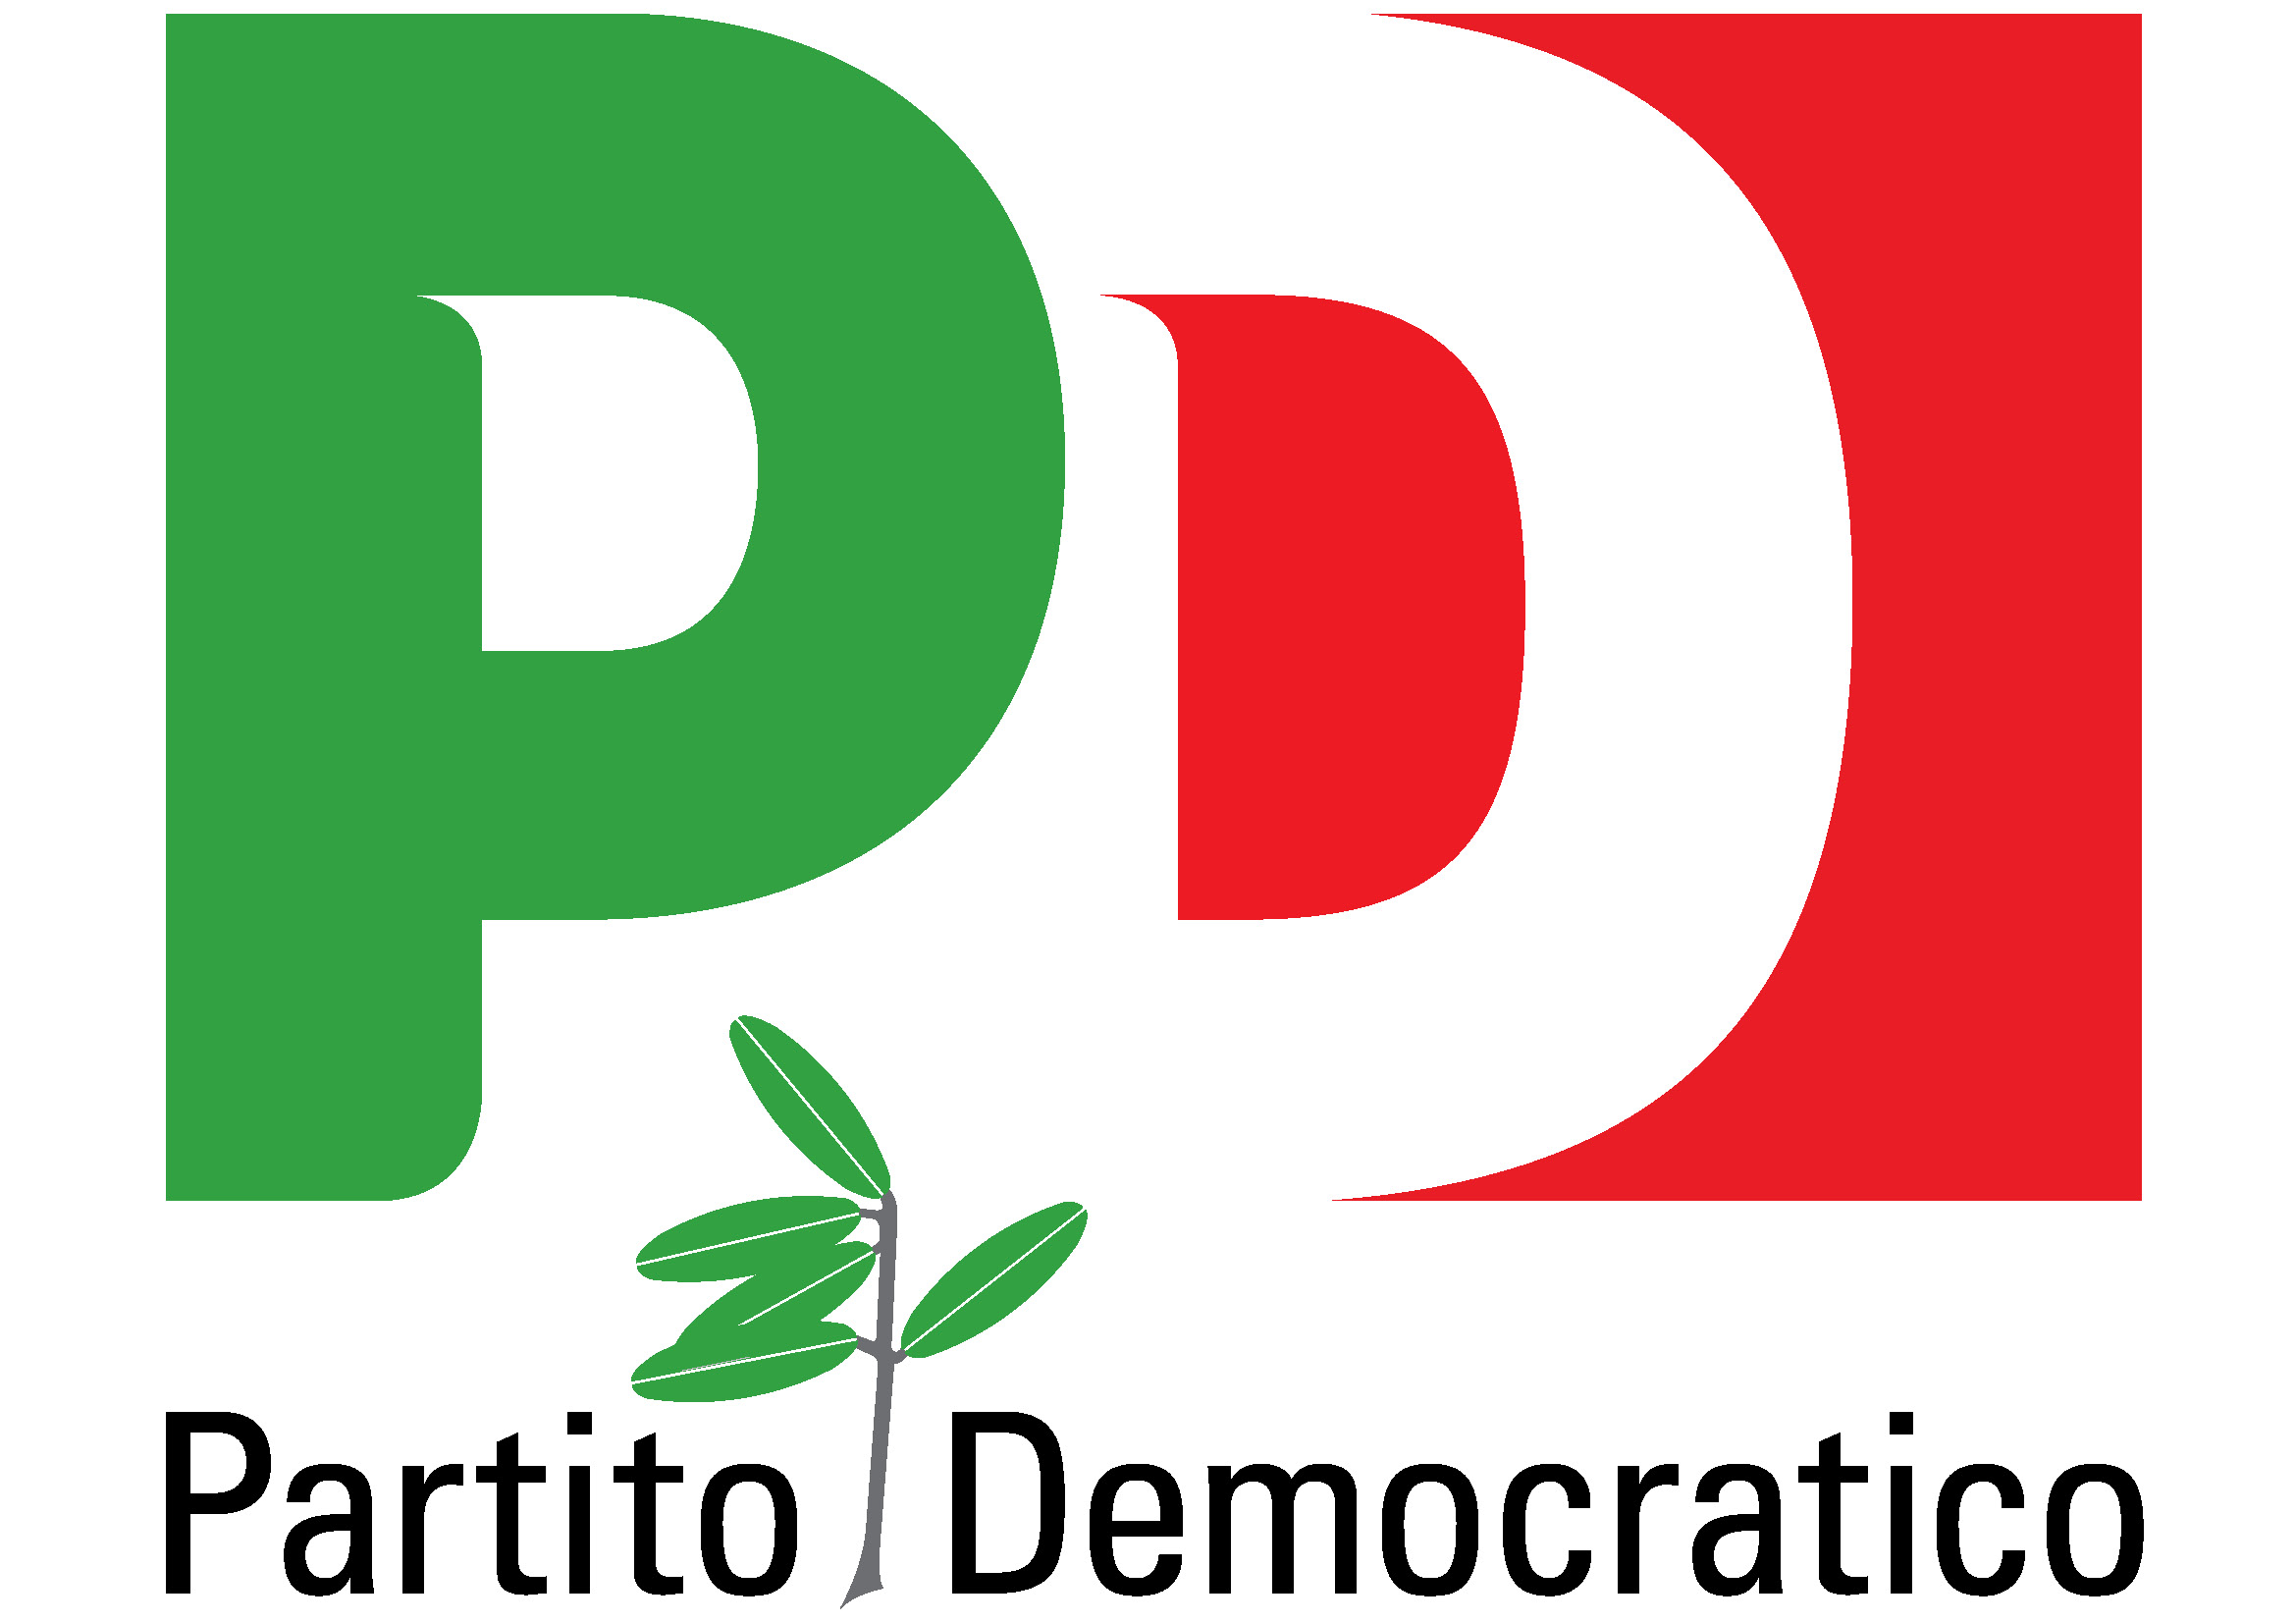 COMUNICATO STAMPA. L’on. Michele Pelillo (PD) interviene sul congresso regionale del Partito Democratico pugliese